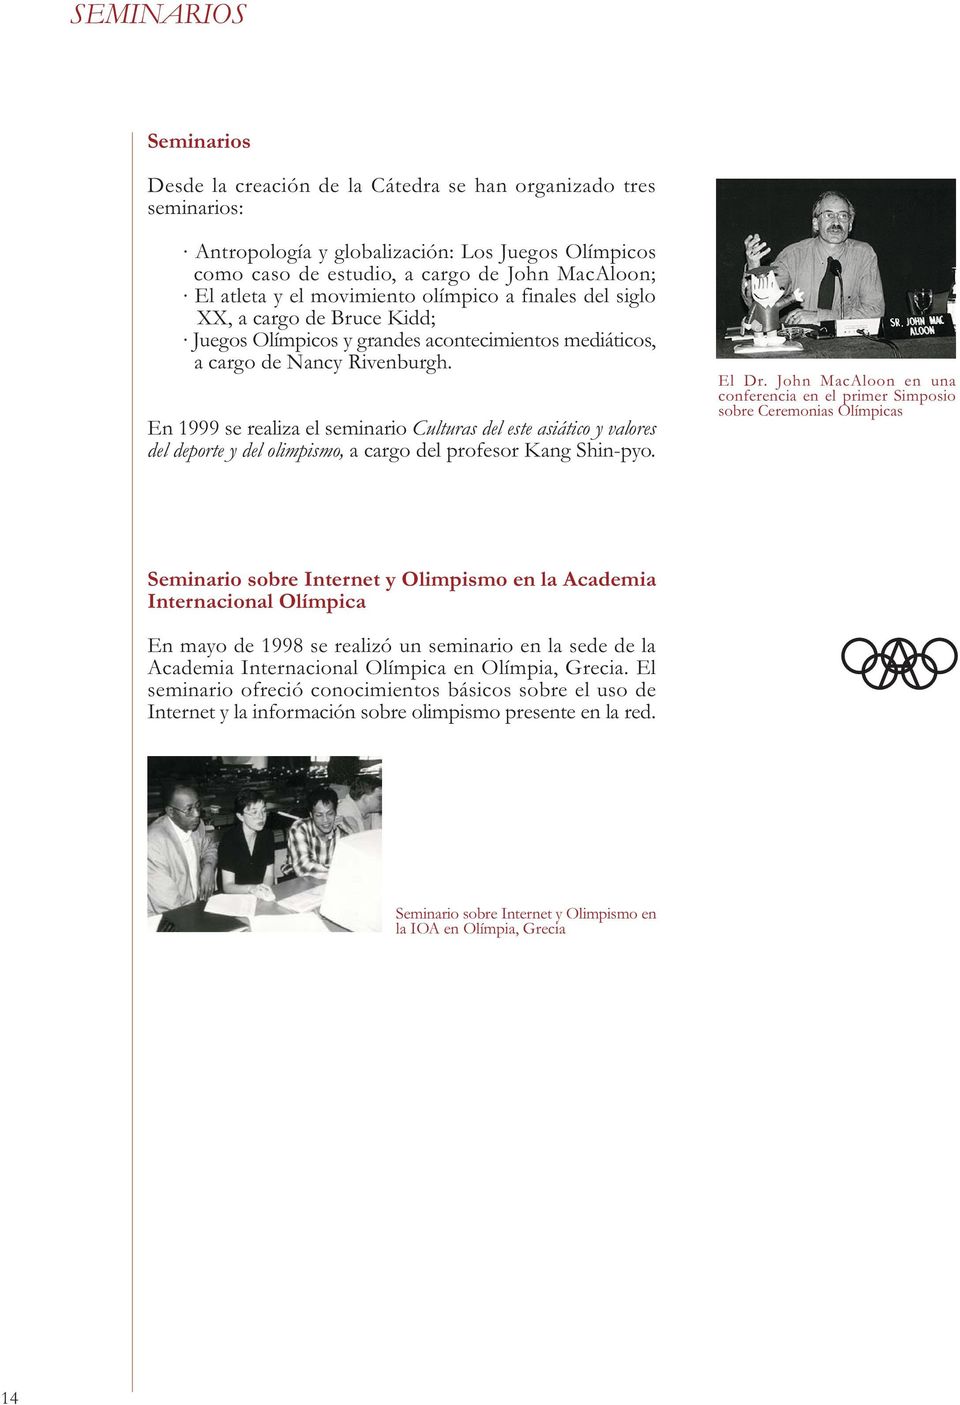 En 1999 se realiza el seminario Culturas del este asiático y valores del deporte y del olimpismo, a cargo del profesor Kang Shin-pyo. El Dr.